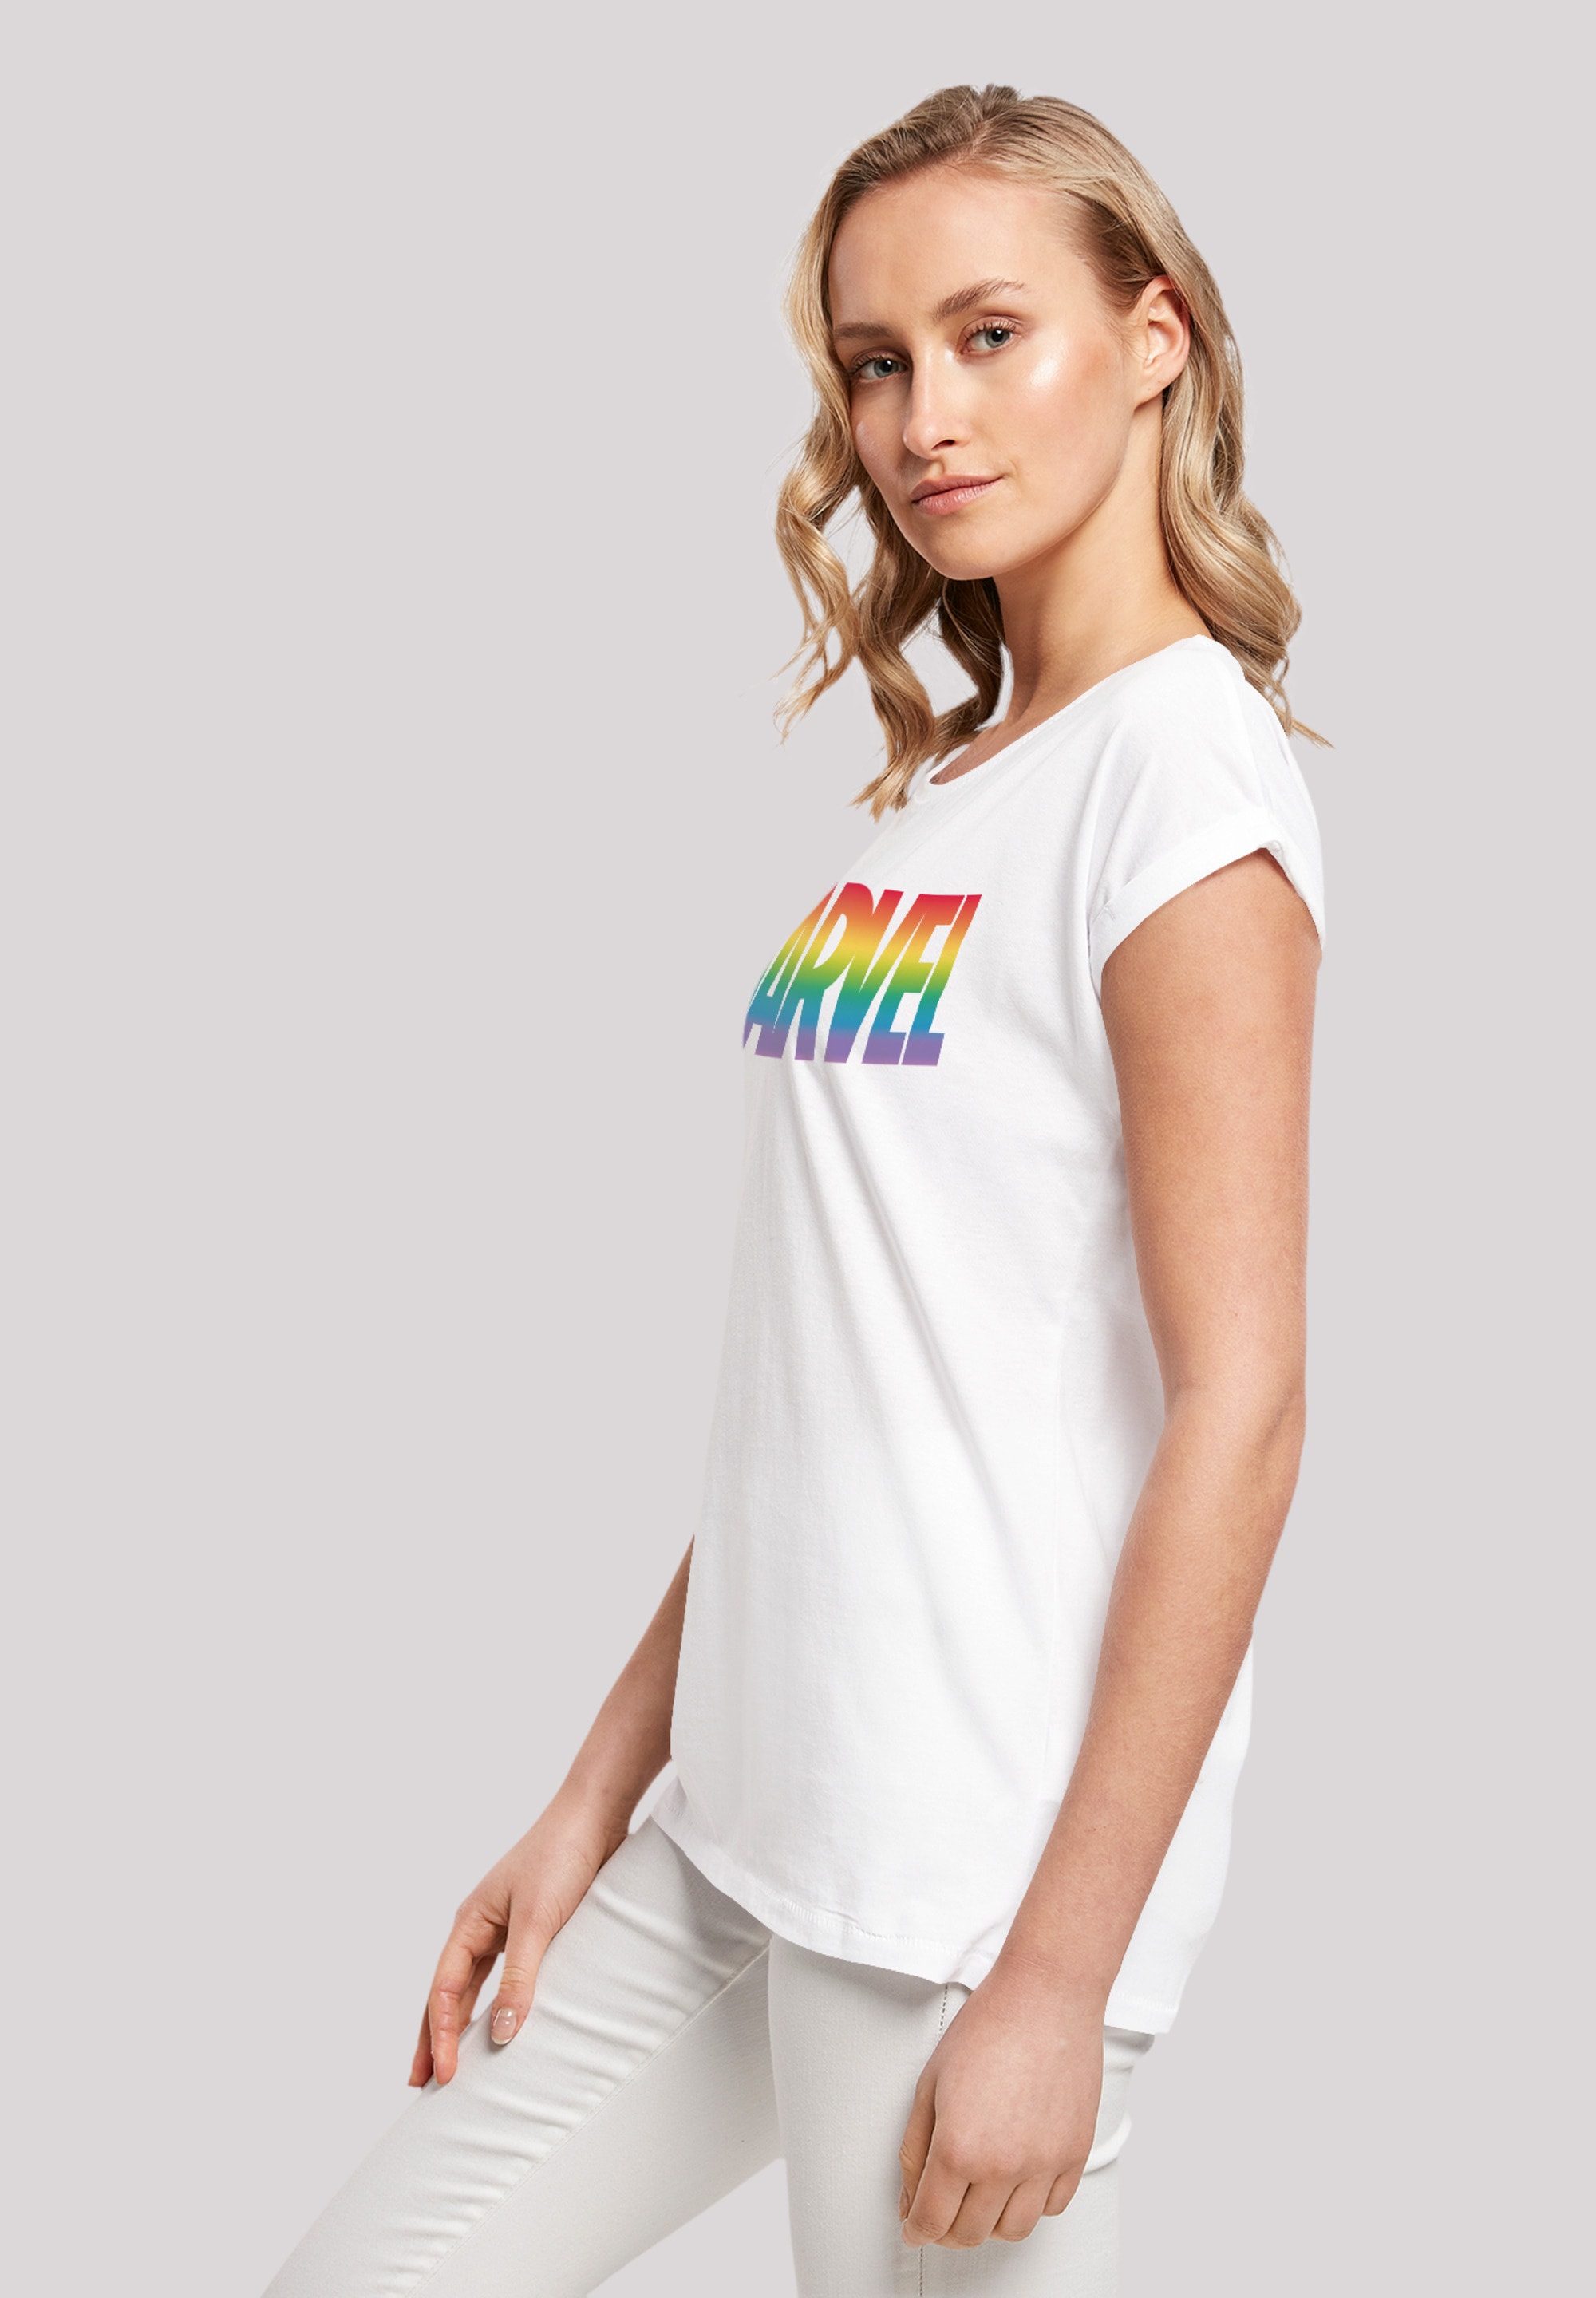 F4NT4STIC bestellen »Marvel T-Shirt Premium | Pride«, Qualität BAUR